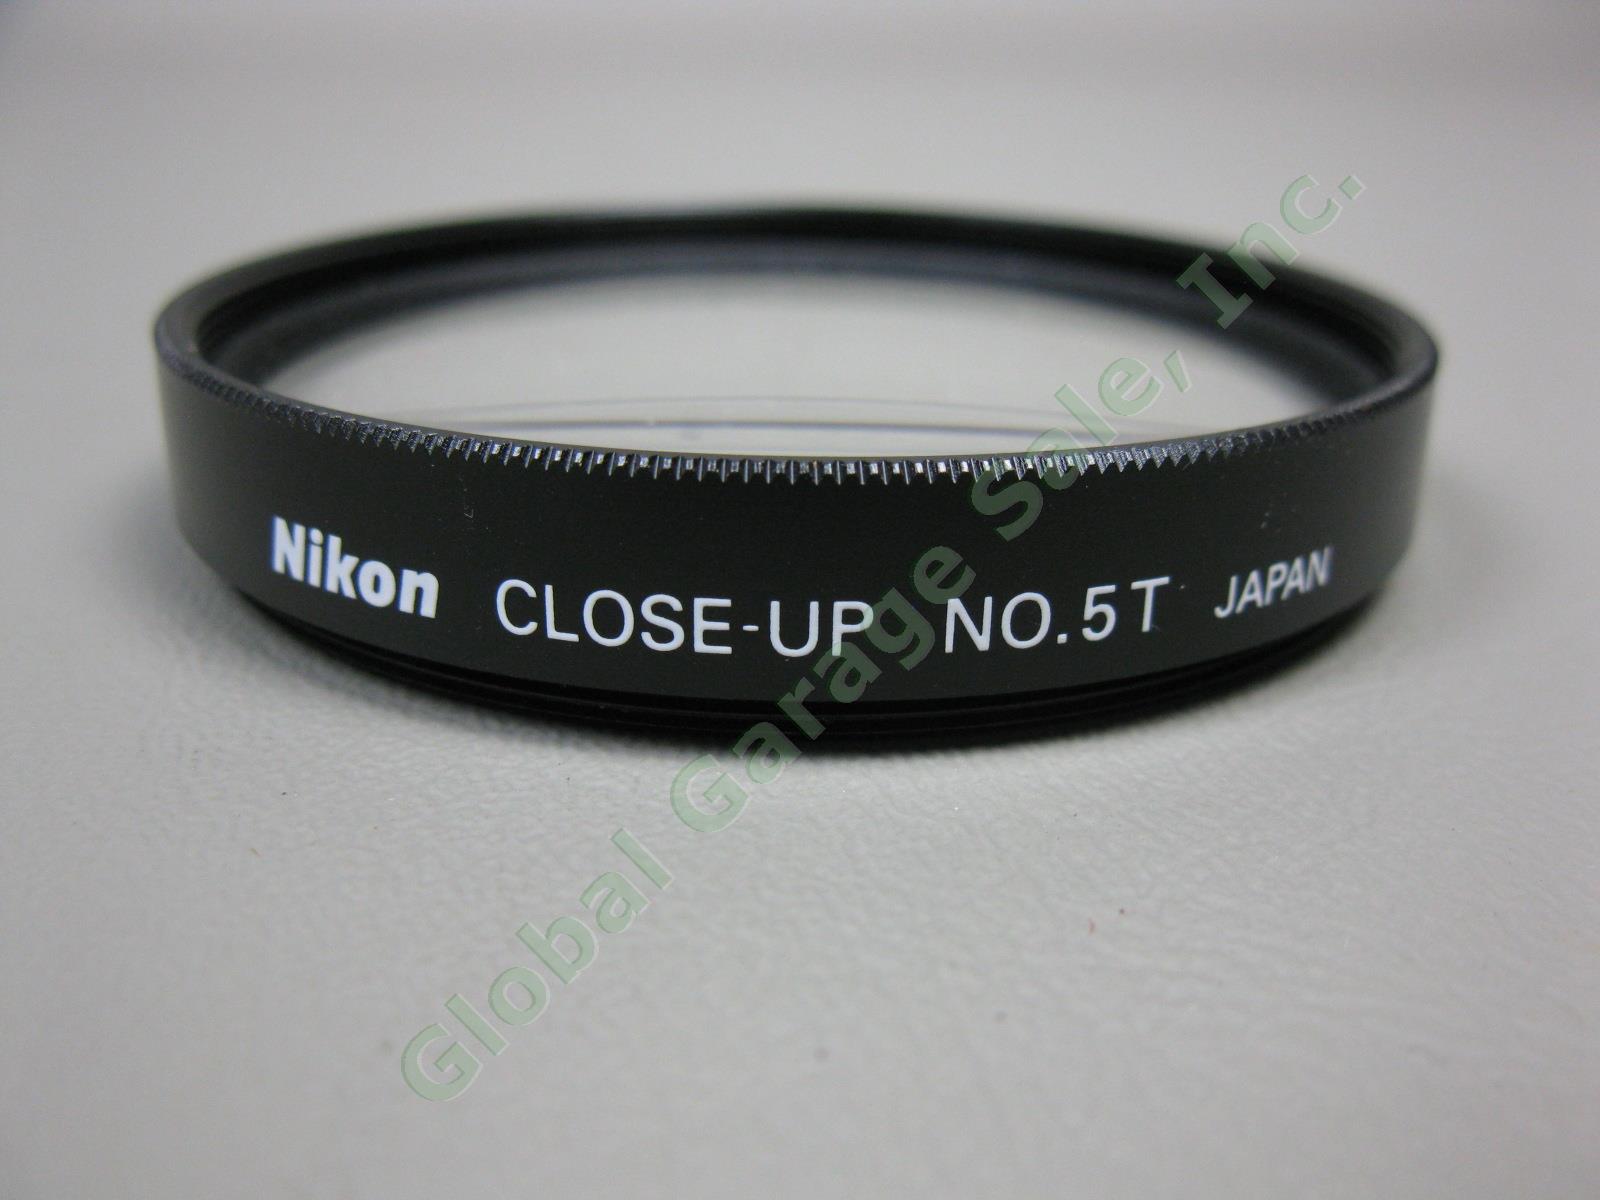 2 Nikon Macro Close-Up Attachment Lens Lot No 5T + 6T + Case 77 62 Filter Bundle 4